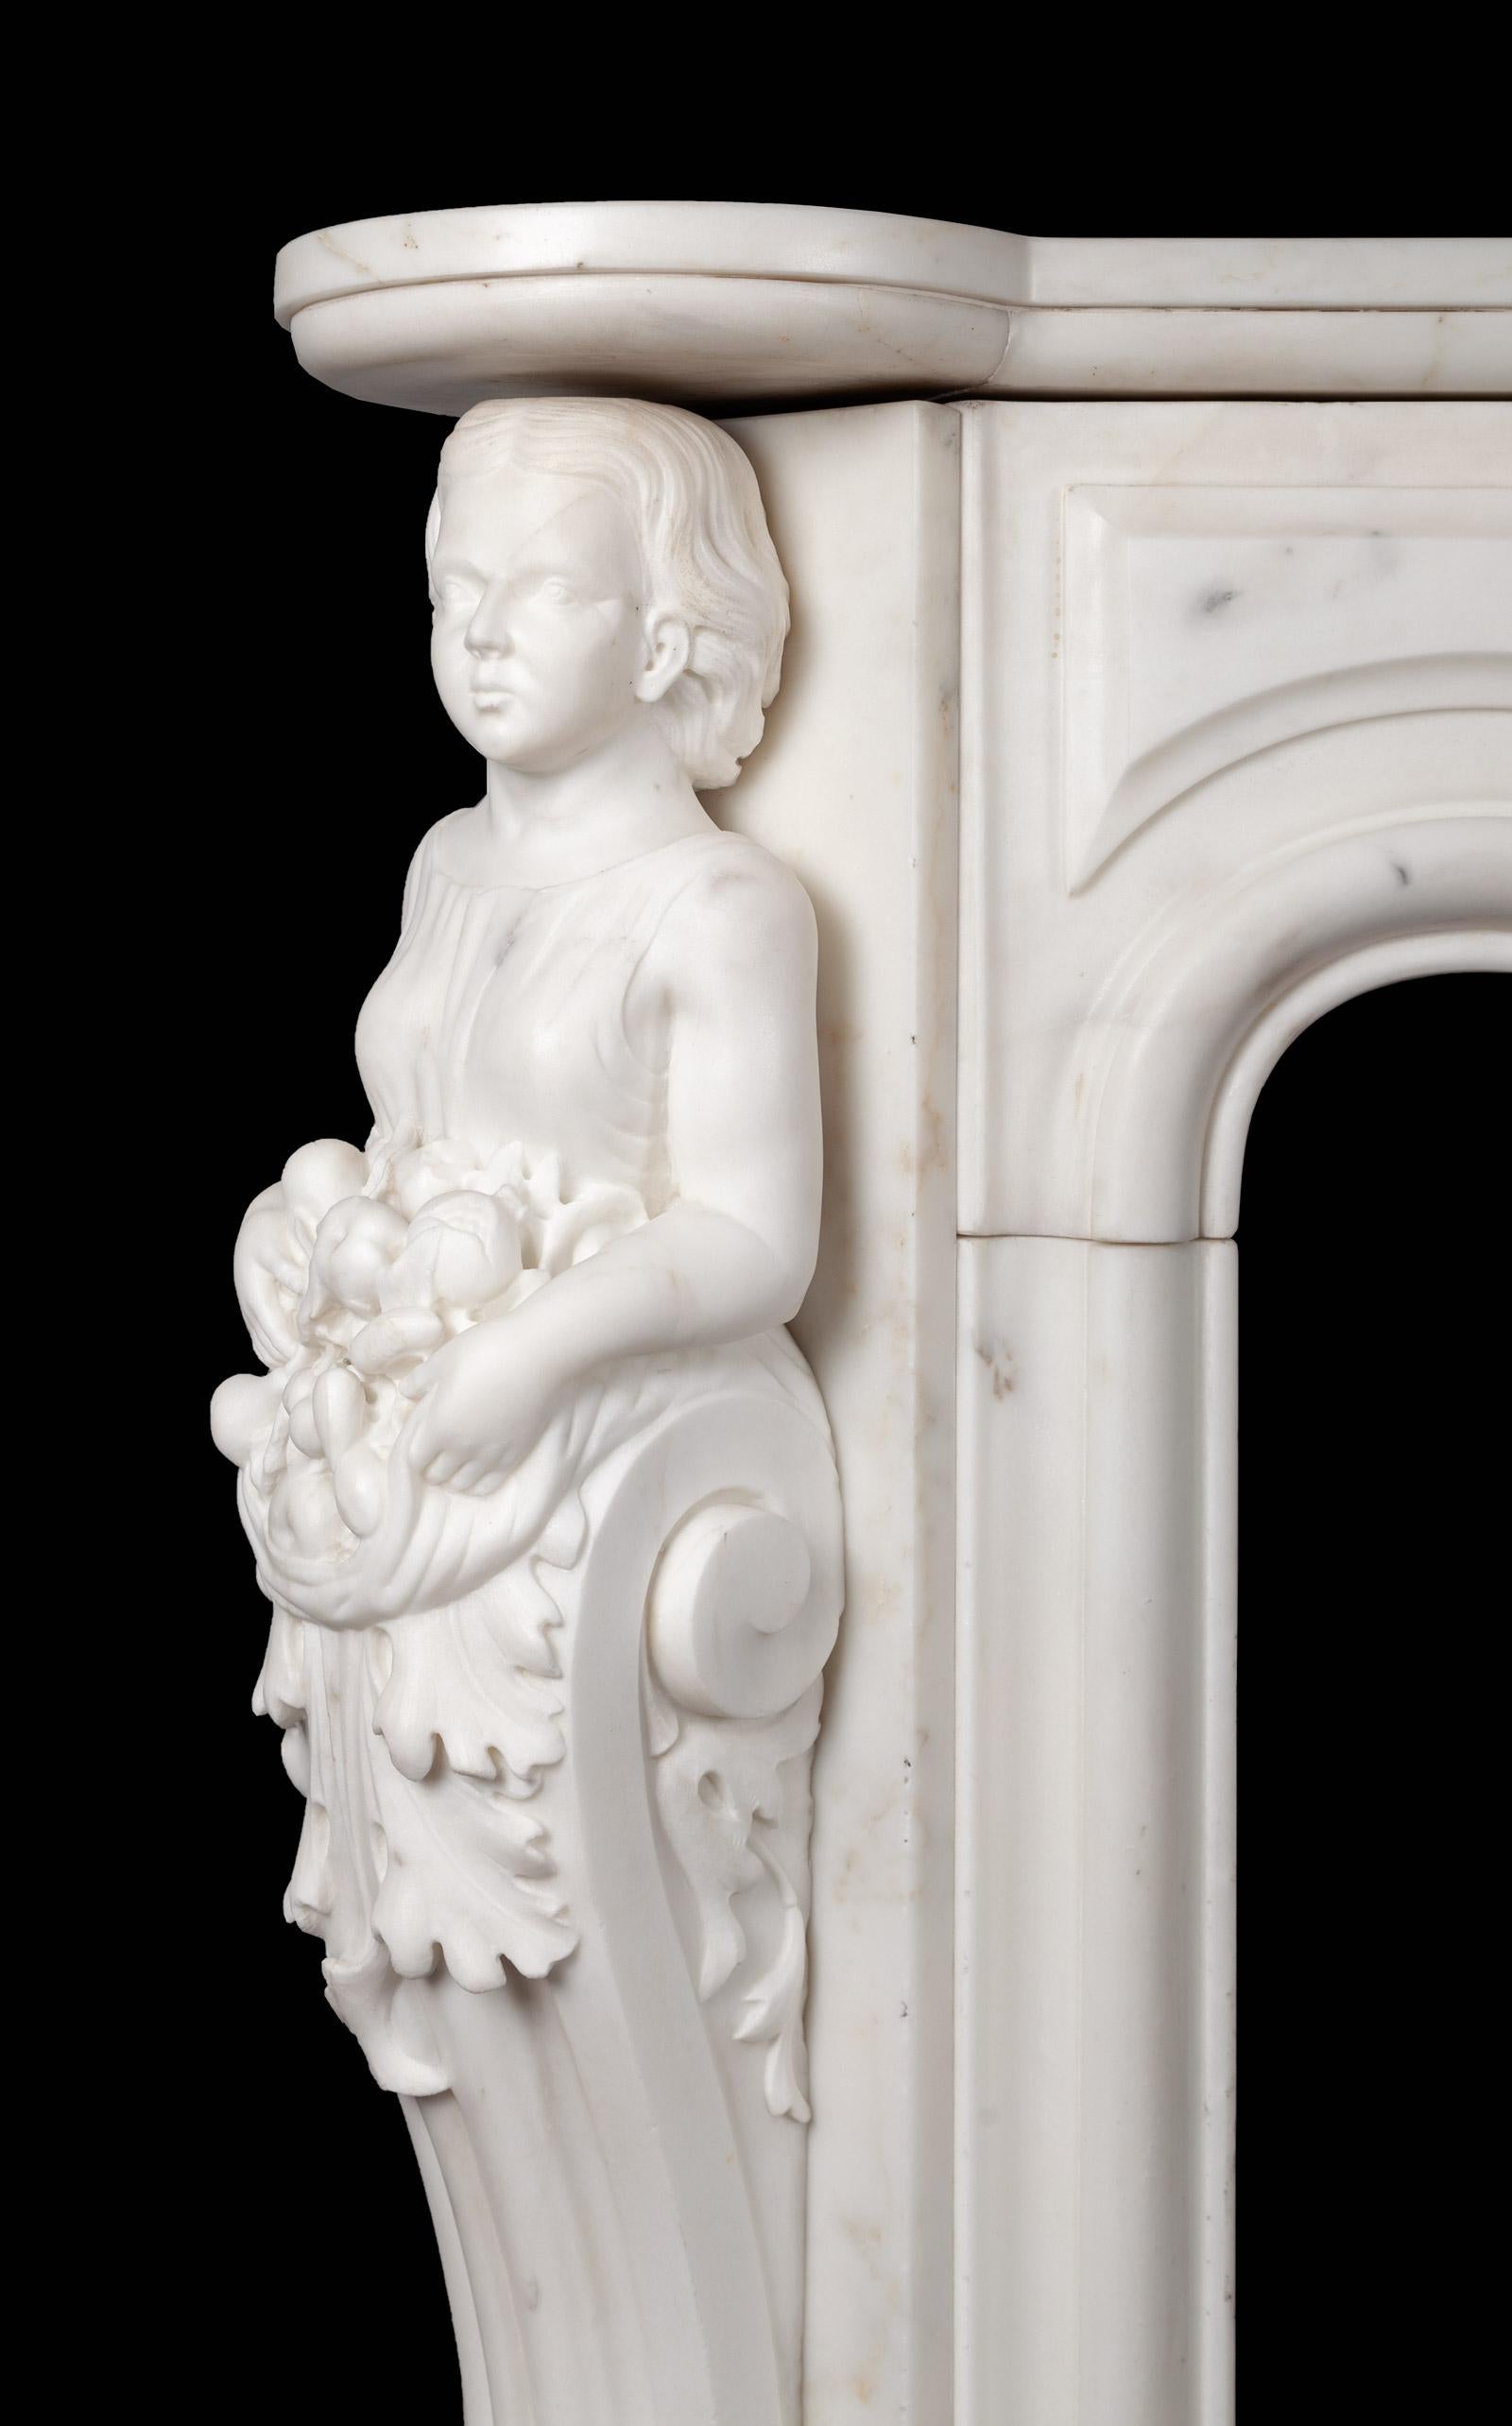 Ein antiker französischer figurativer Marmorsockel aus Carara-Statuen im Louis XV-Stil. Dieses seltene und bemerkenswerte französische Kaminstück zeigt kühn geschnitzte weibliche Begriffe und einen kunstvoll geschnitzten Fries. Der Serpentinenfries